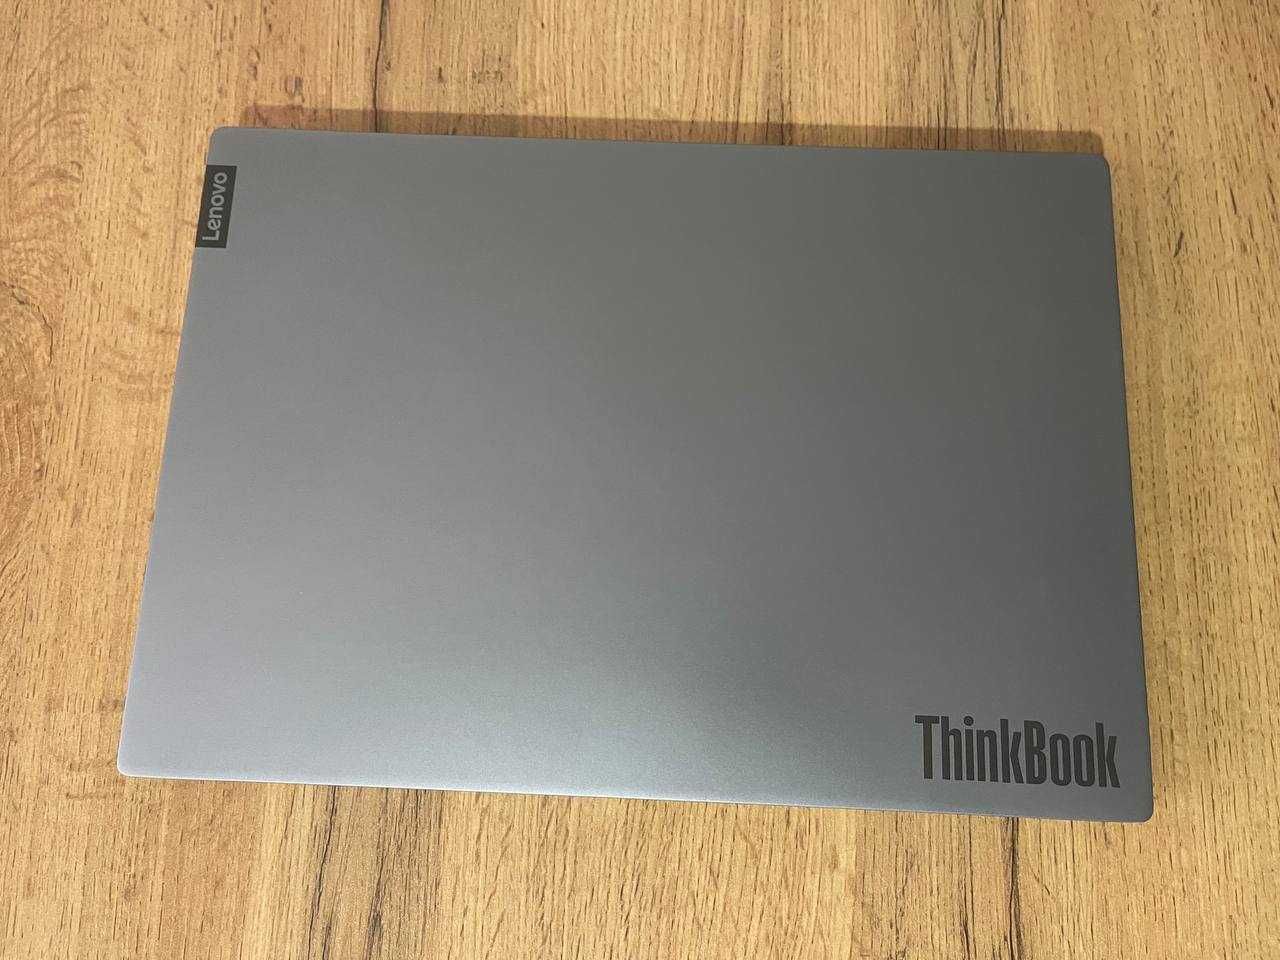 Lenovo ThinkBook 14 Intel CORE i7-1065G7 озу8гб хард 256ssd